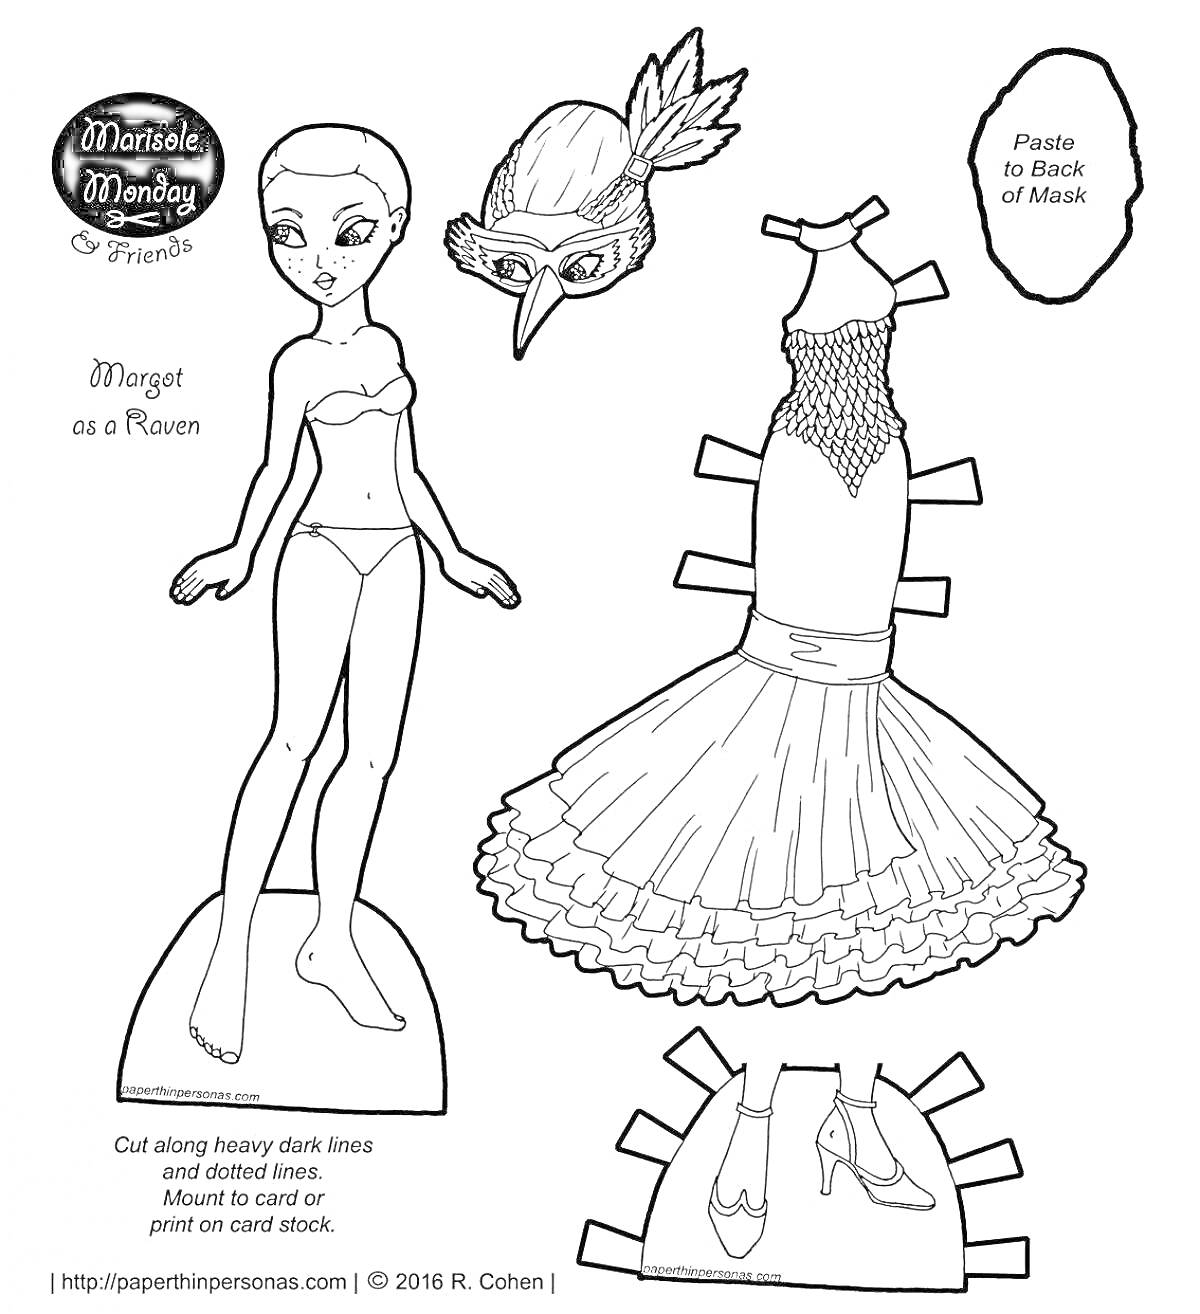 Раскраска Бумажная кукла Мортет, платье, обувь и маска для вырезания